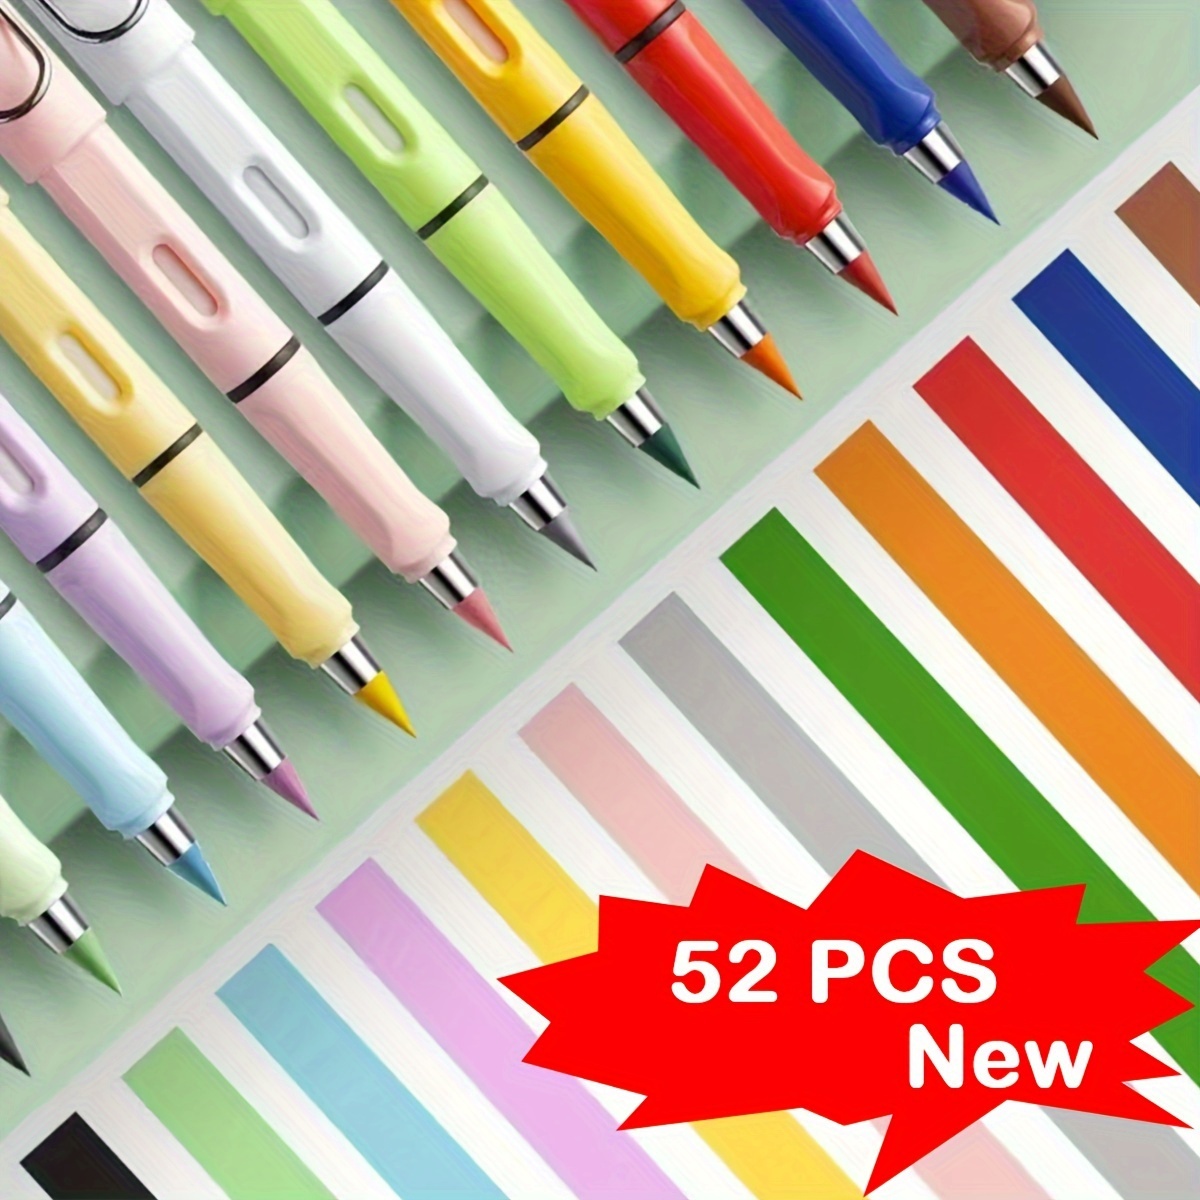 

52pcs/set Colored Pencils, New Classic Color 4 Pencils+48 Colored Pencil Tips Set Eternity Pencils, Erasable, Not Easy To Break, No Sharpening Pencils, Painting Pencils, Art Pencils